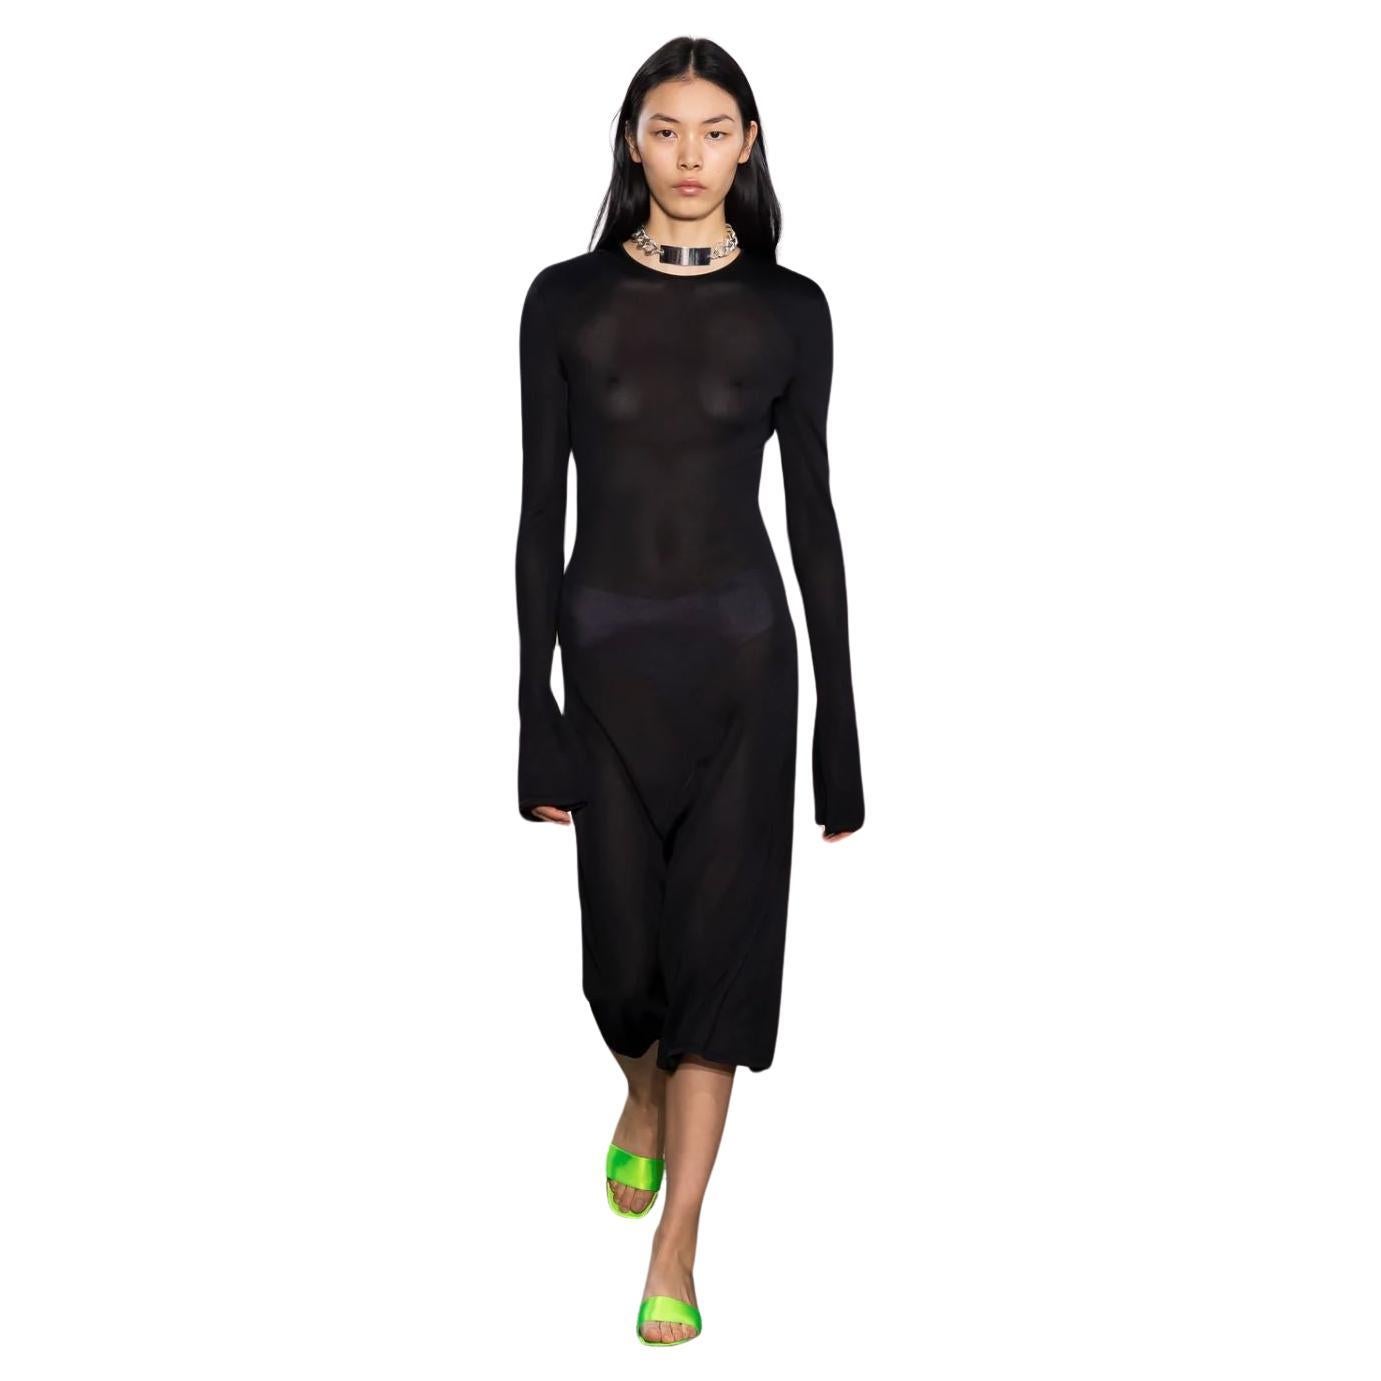 Kwaidan Editions Runway 2000 SS TRANSFORMER Semi Transparent Minimalist XS Dress For Sale